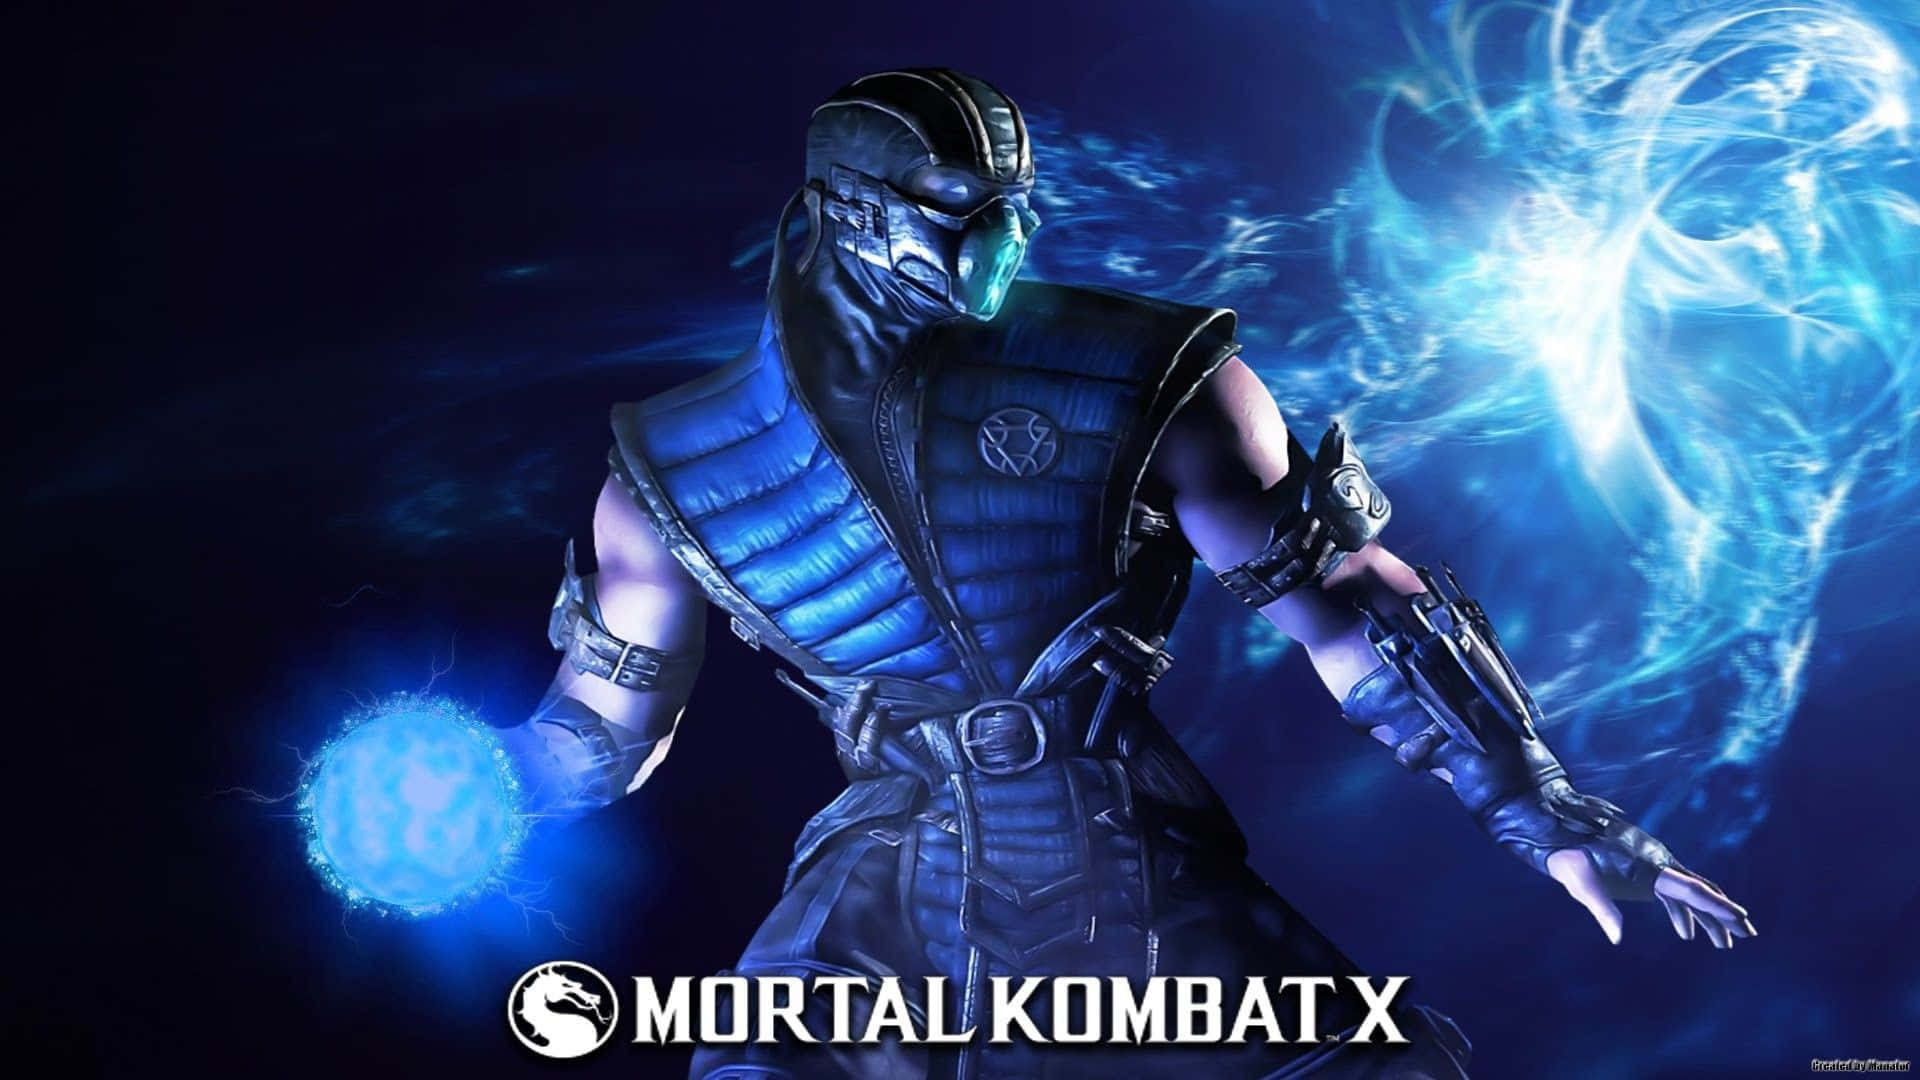 Ospersonagens Da Série Mortal Kombat Prontos Para A Batalha.